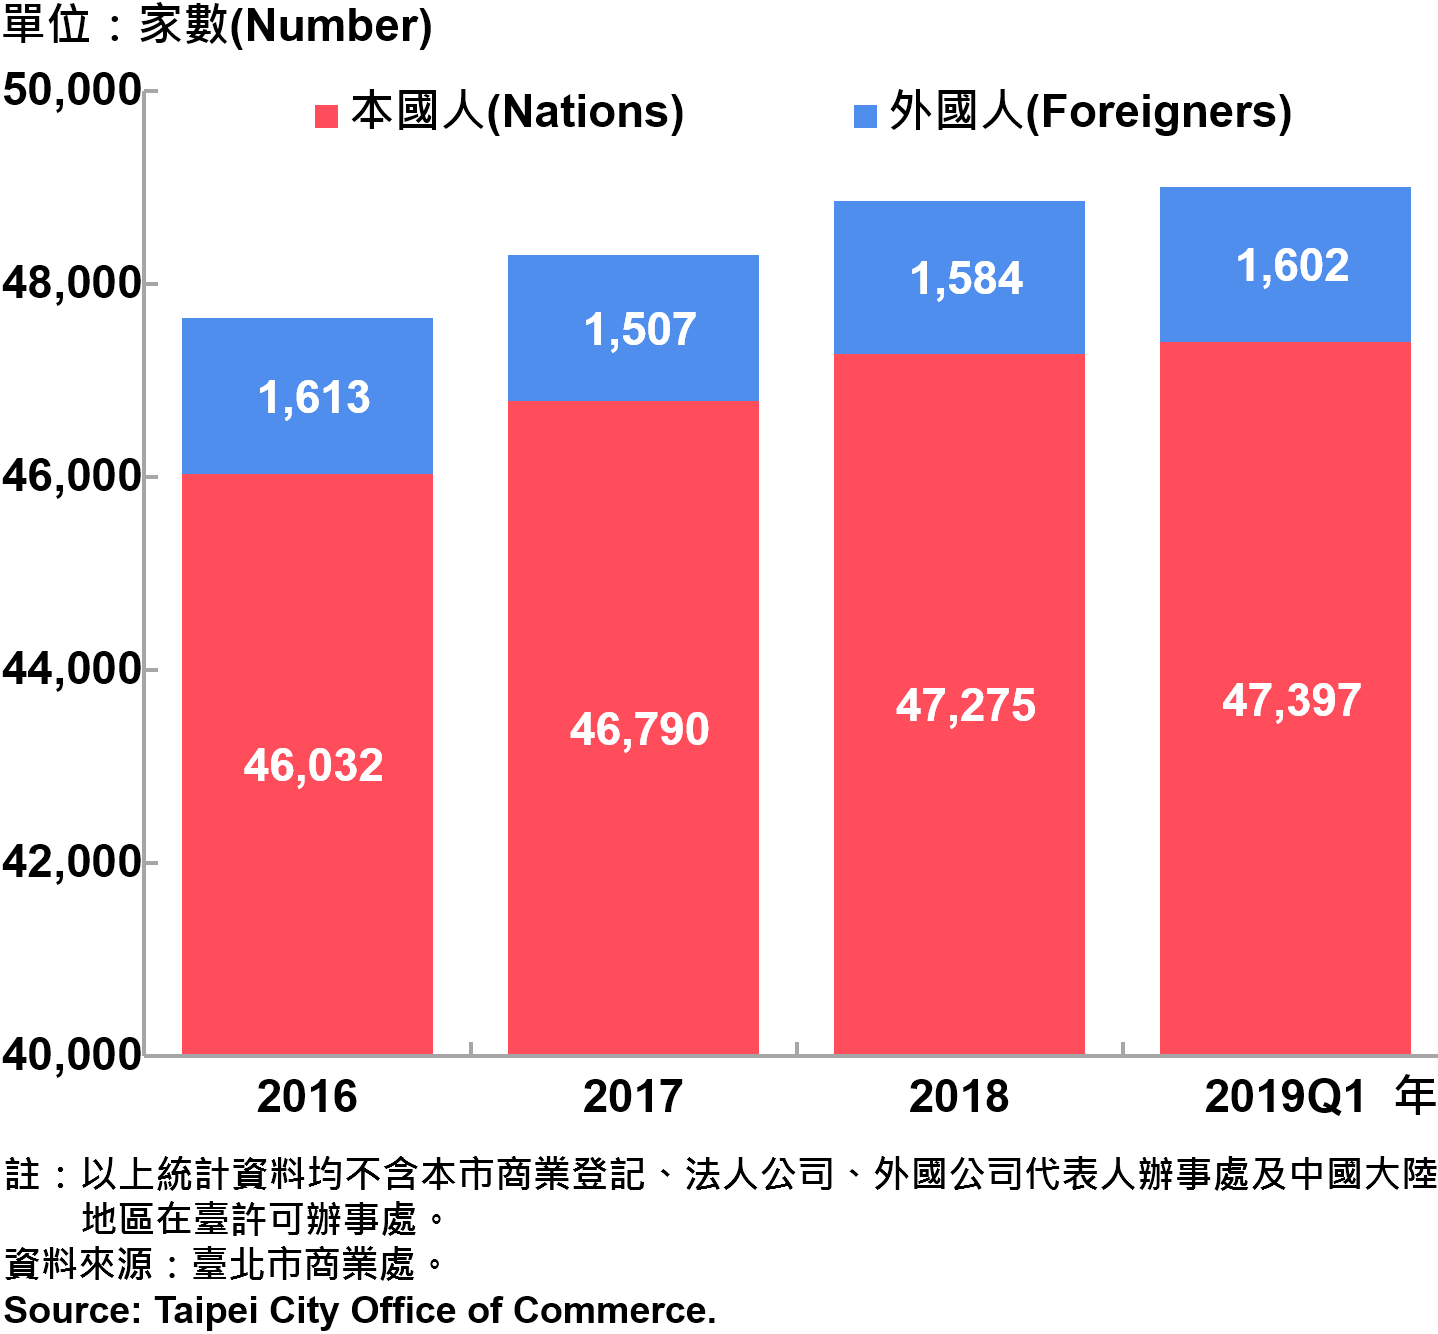 臺北市新創公司青創負責人為本國人與外國人分布情形—依現存家數—2019Q1 Responsible Person of Newly Registered Companies In Taipei City by Nationality - Number of Current —2019Q1